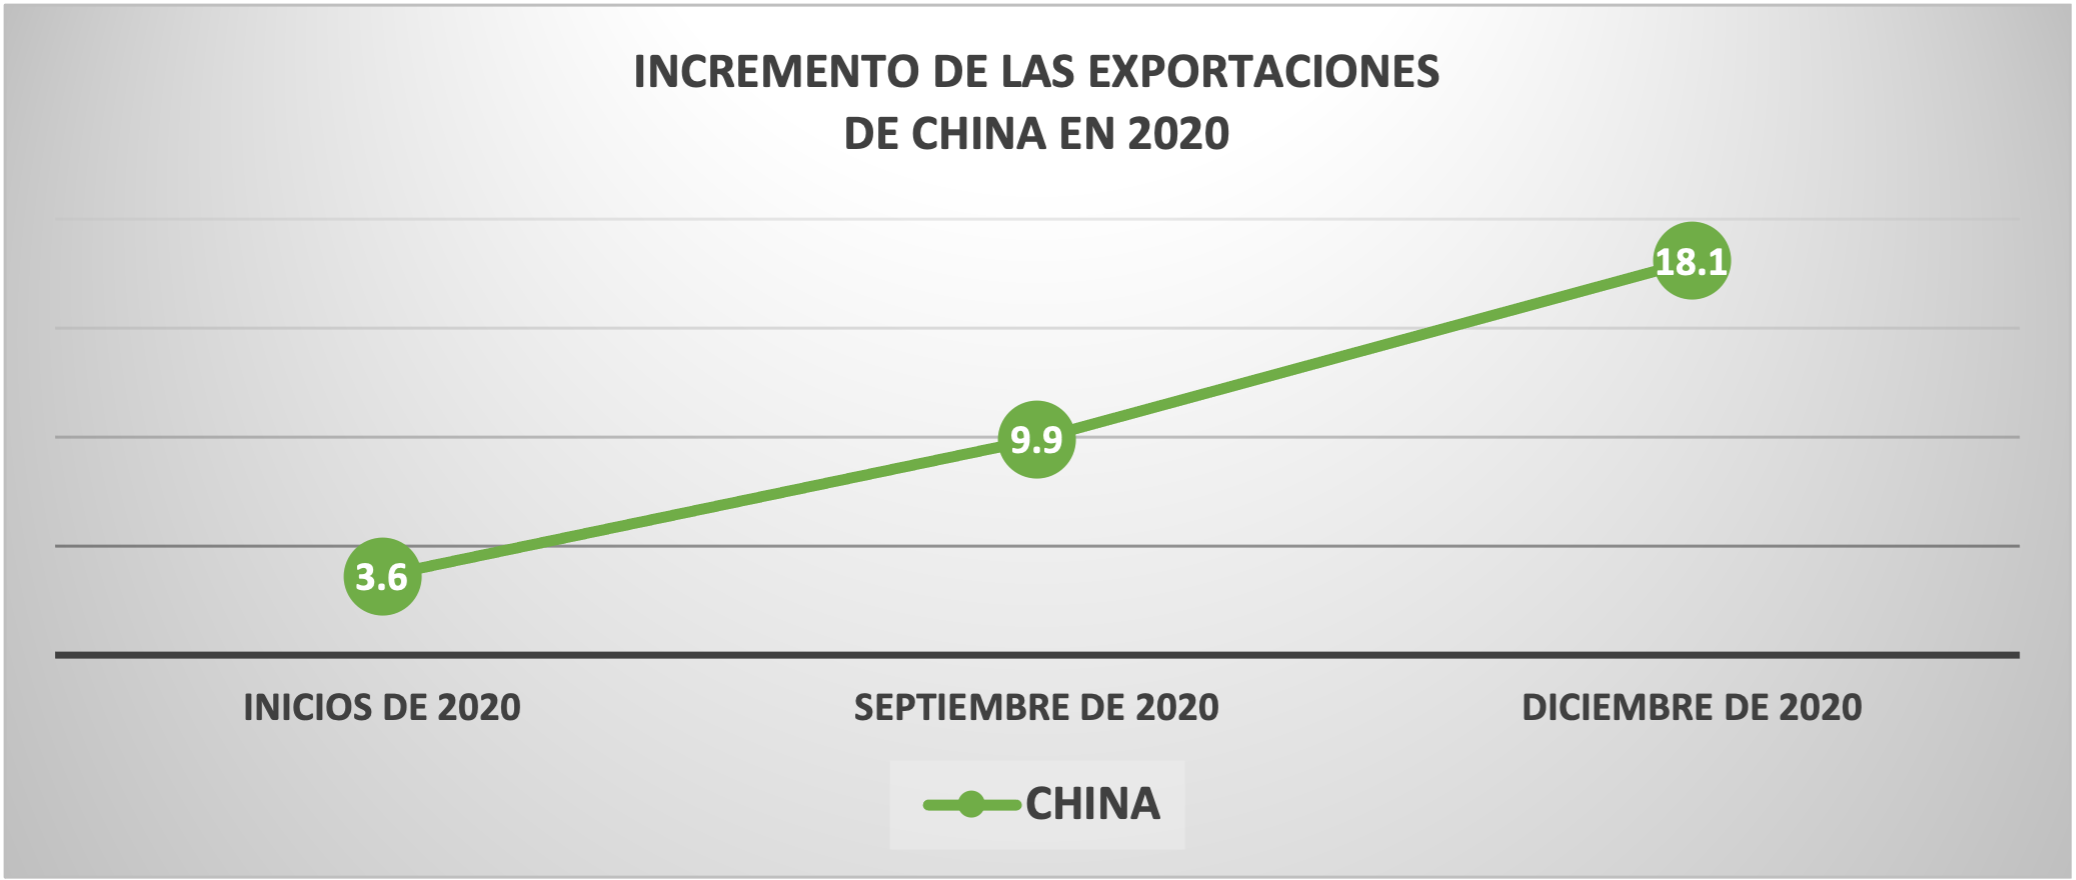 Gráfica 2. Incremento de las exportaciones en China en 2020